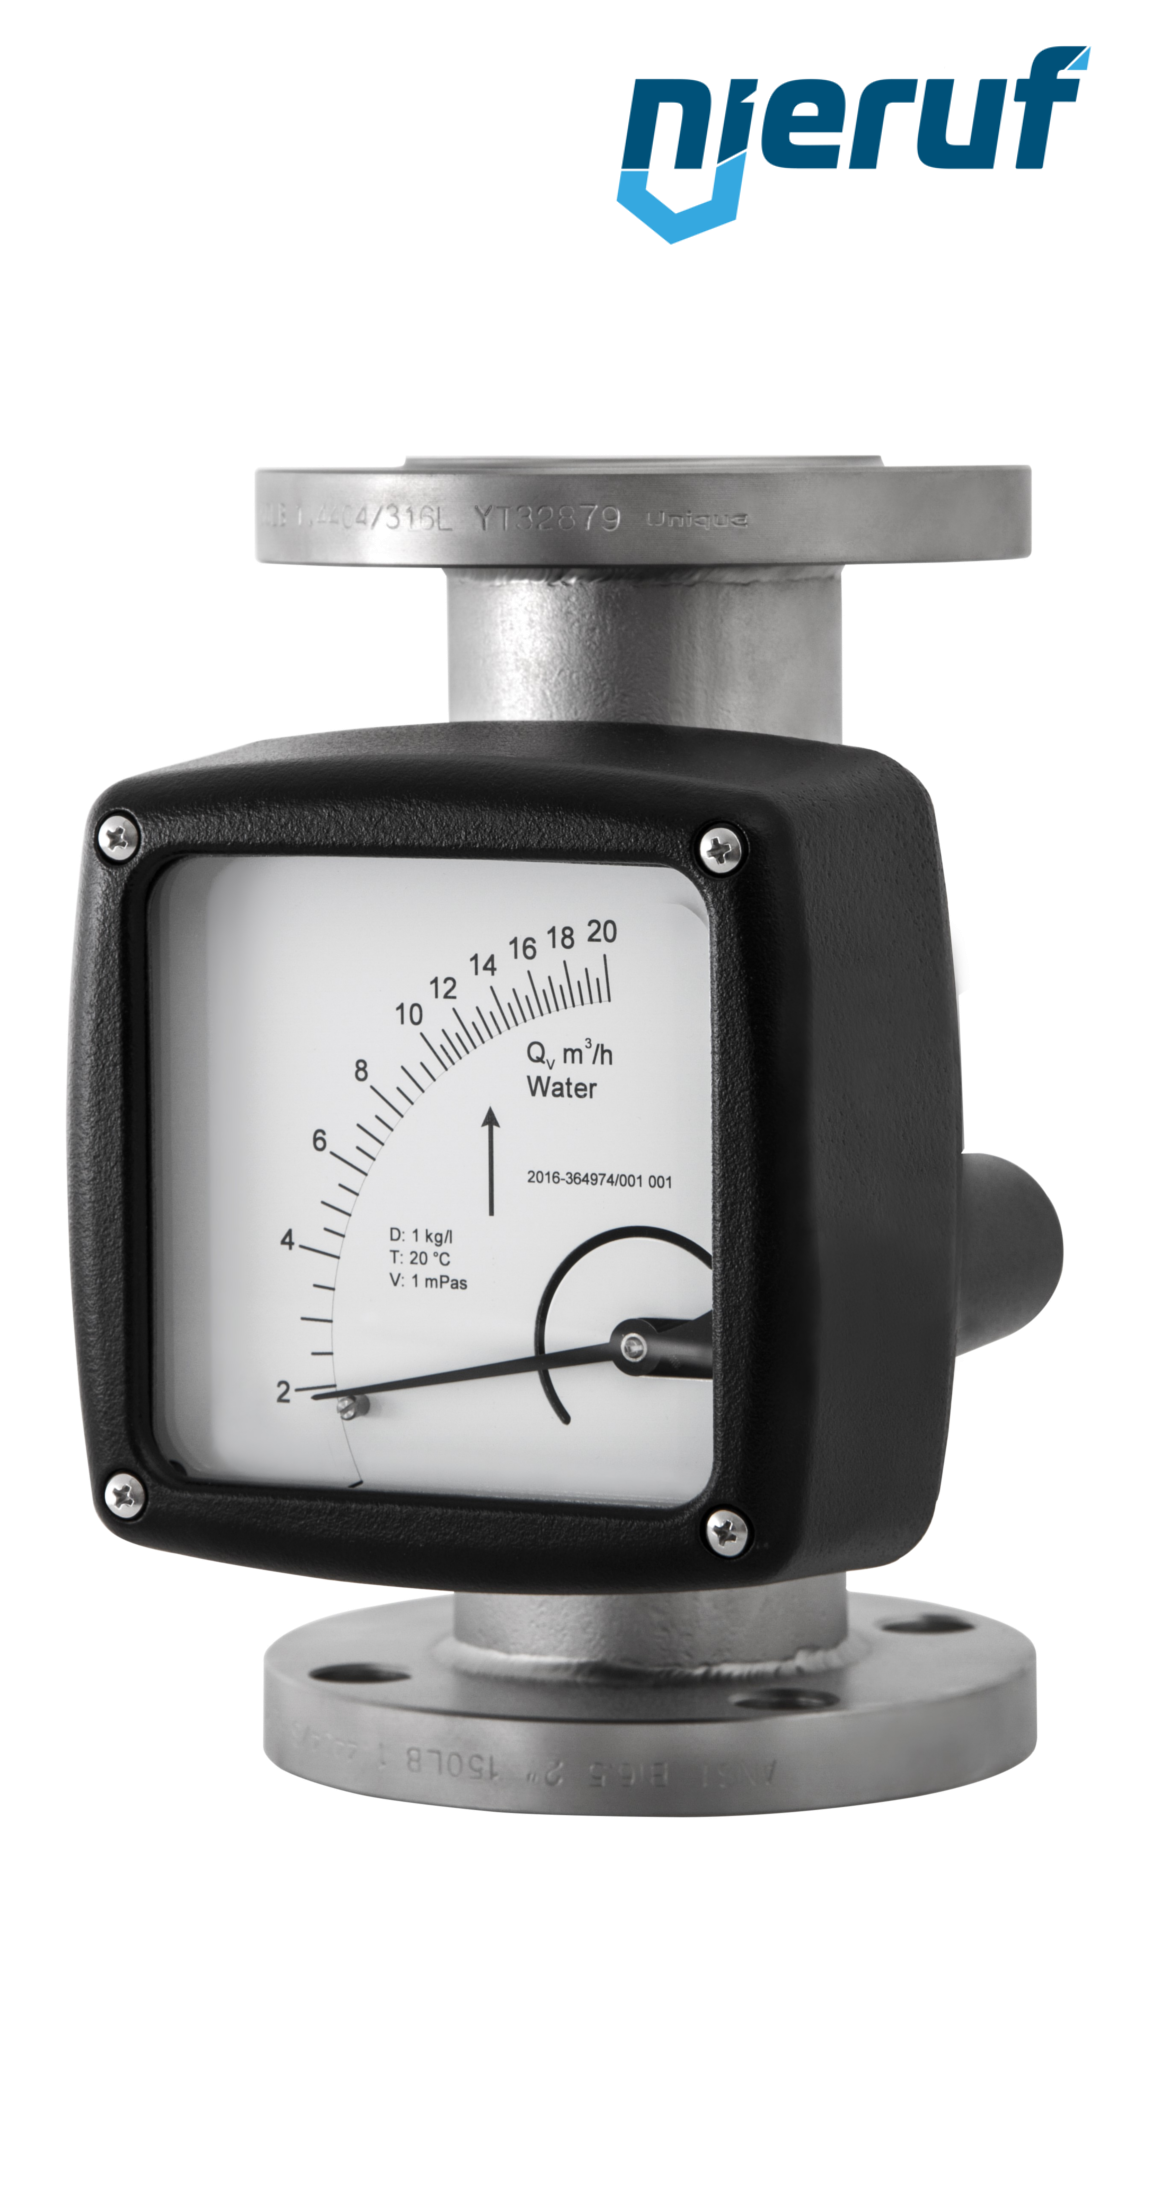 misuratore di flusso / rotametro completamente in metallo DN150-attacco 170,0 - 1700,0 m3/h tubo DN100 aria